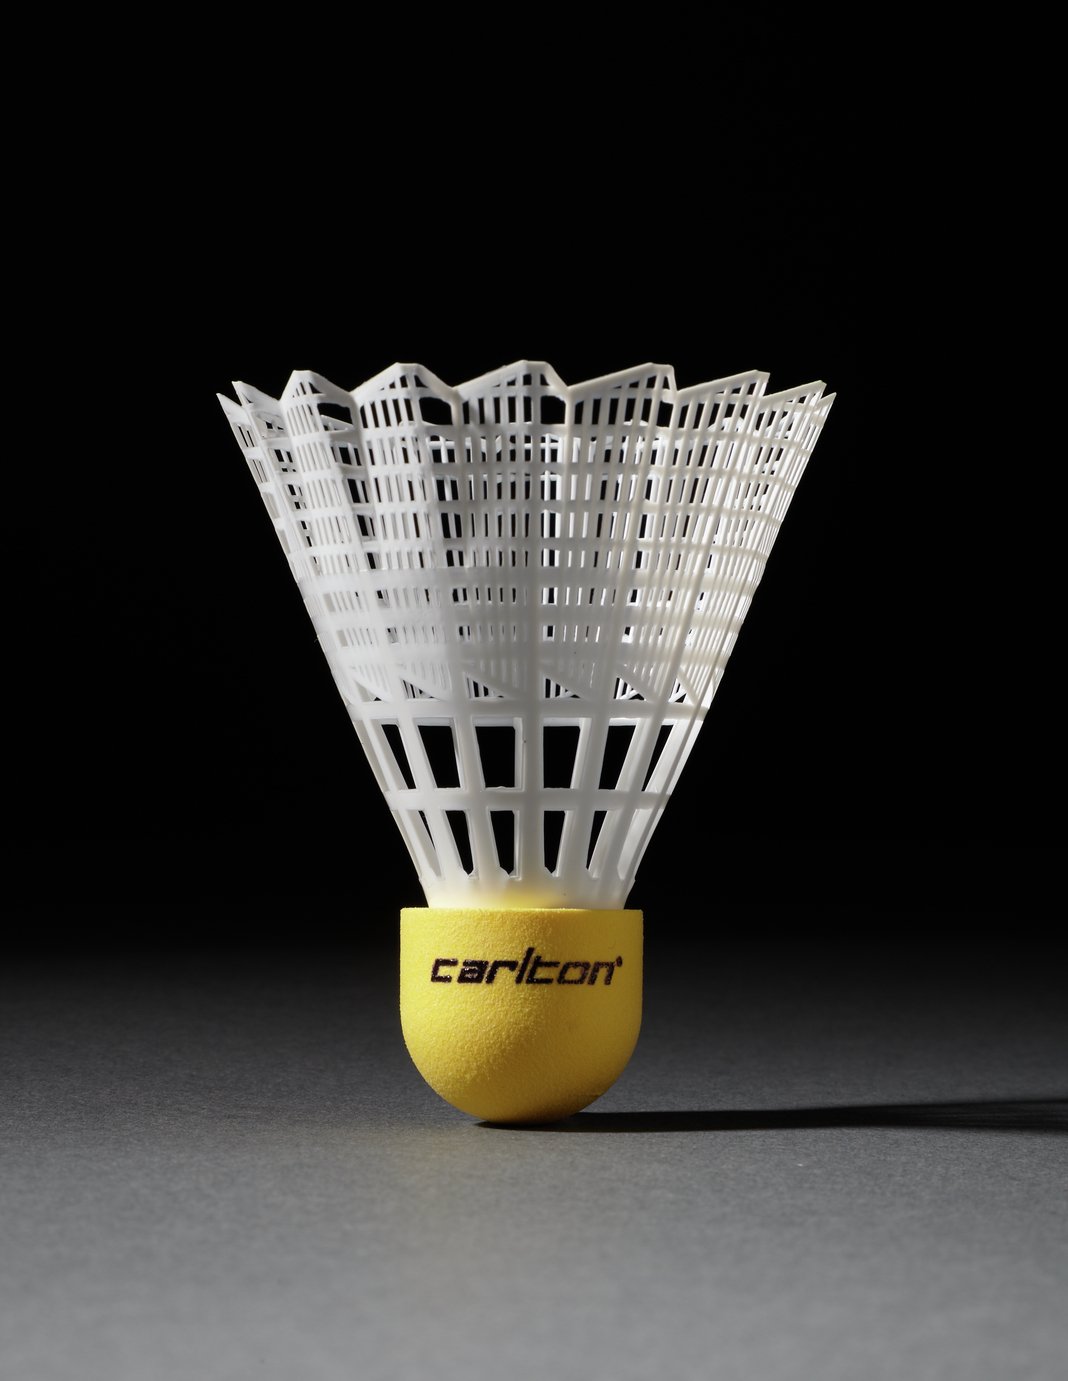 carlton badminton shuttlecock